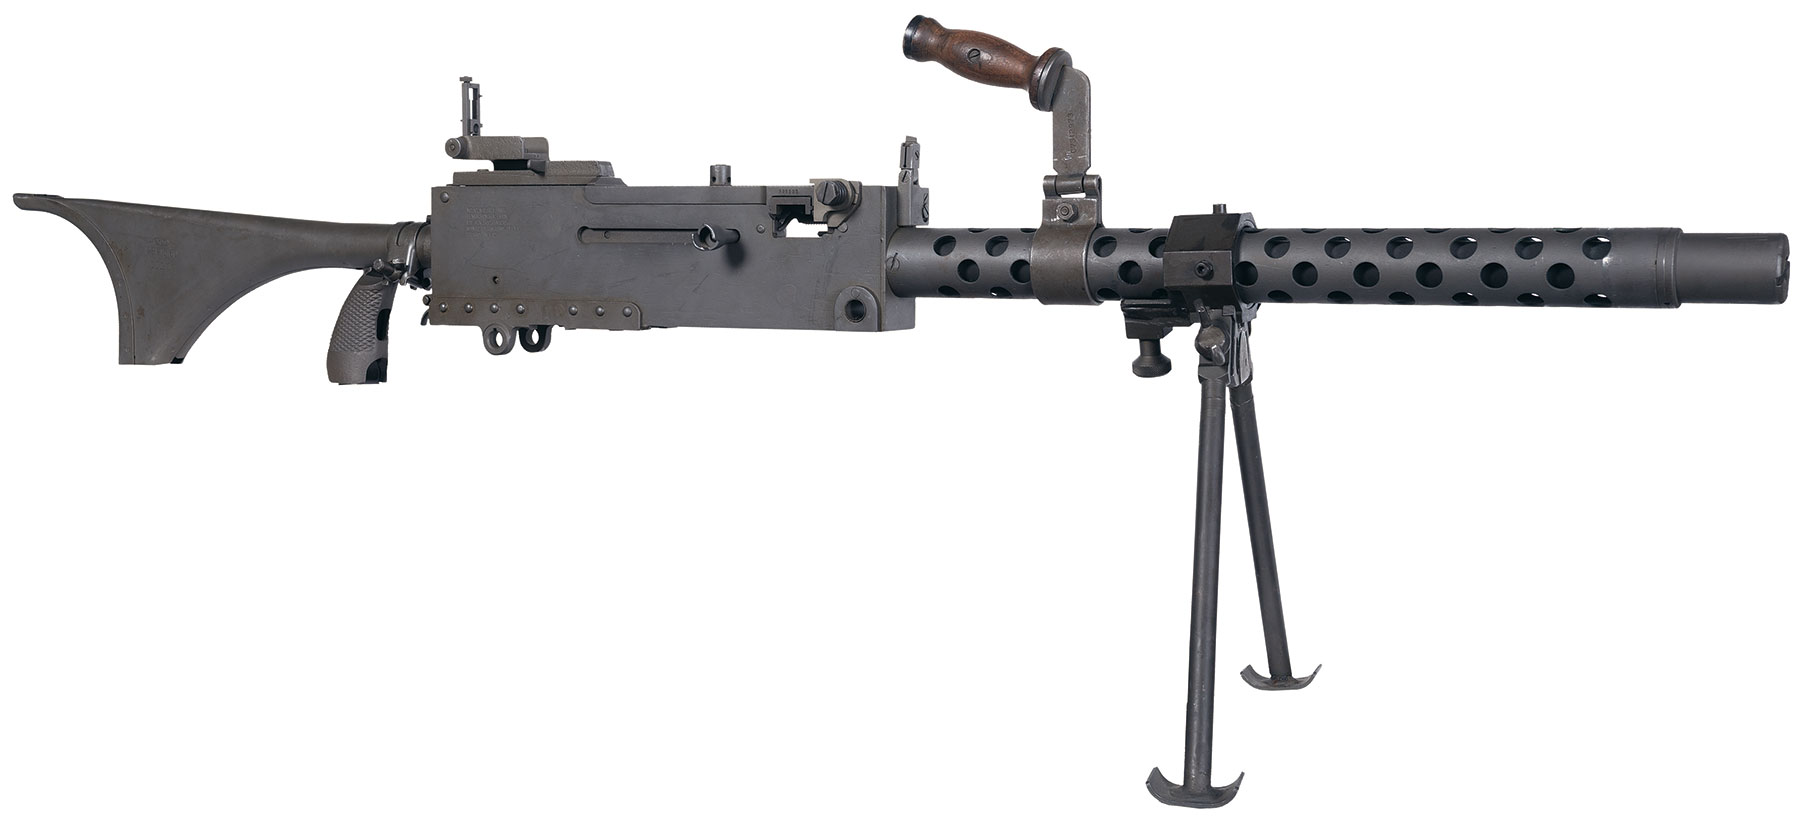 American Arms/Delta M1919 Semi-Automatic RifleA semi-automatic reproducti.....